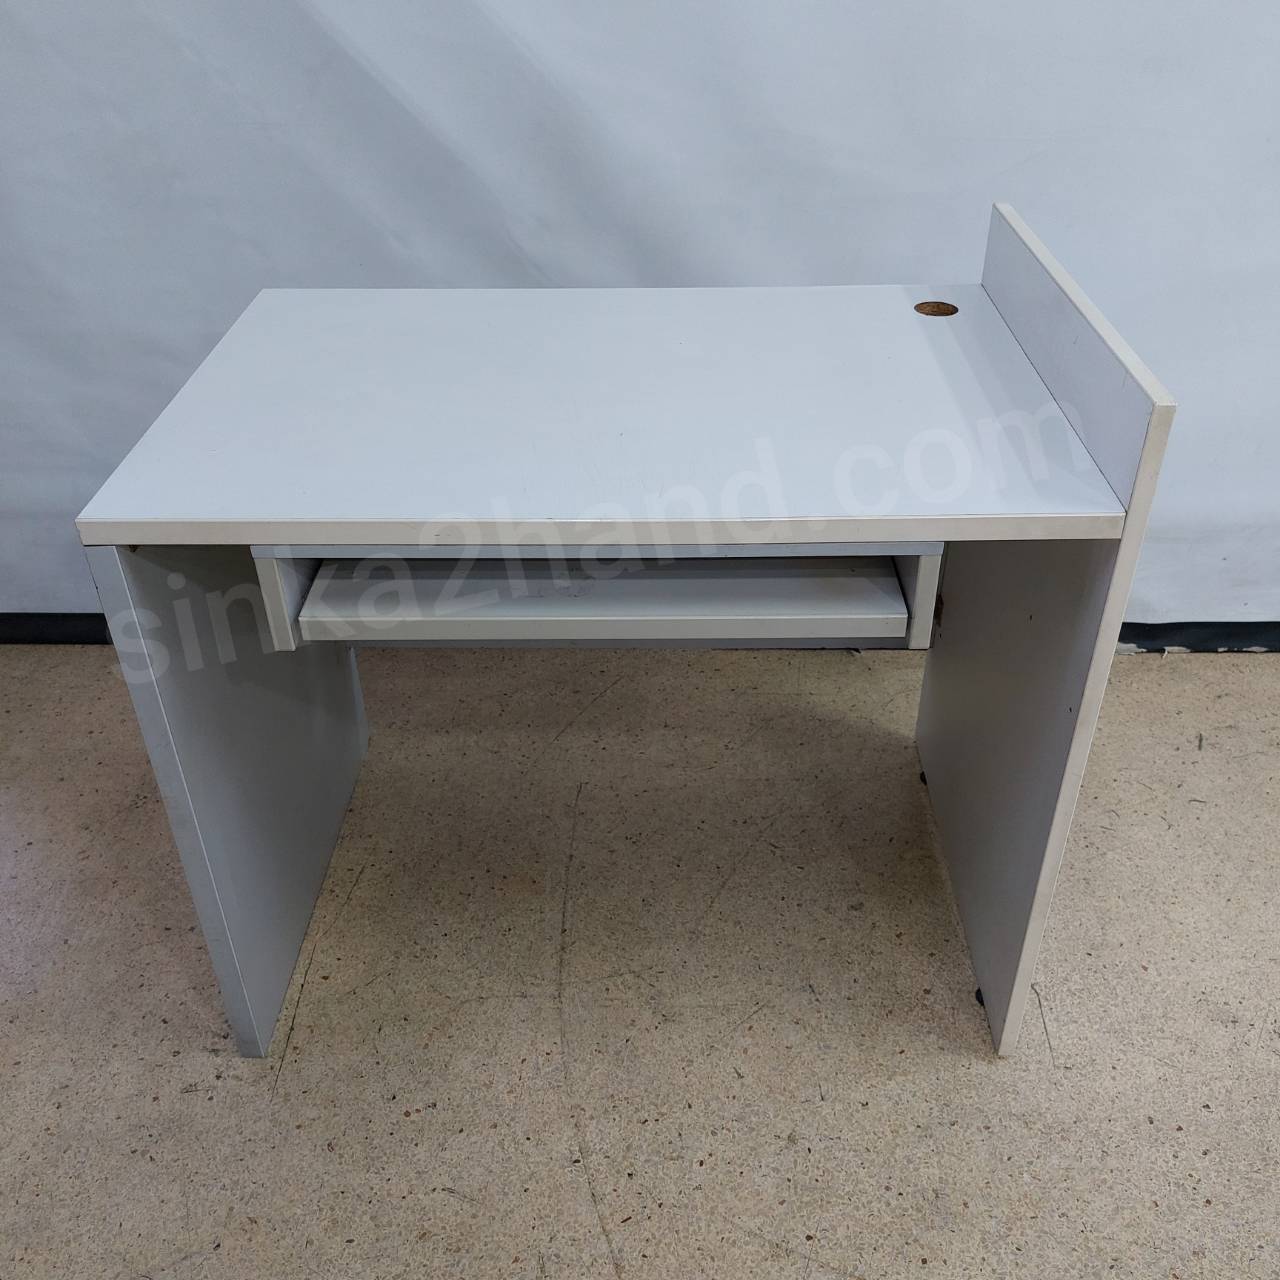 โต๊ะคอมไม้สีขาว